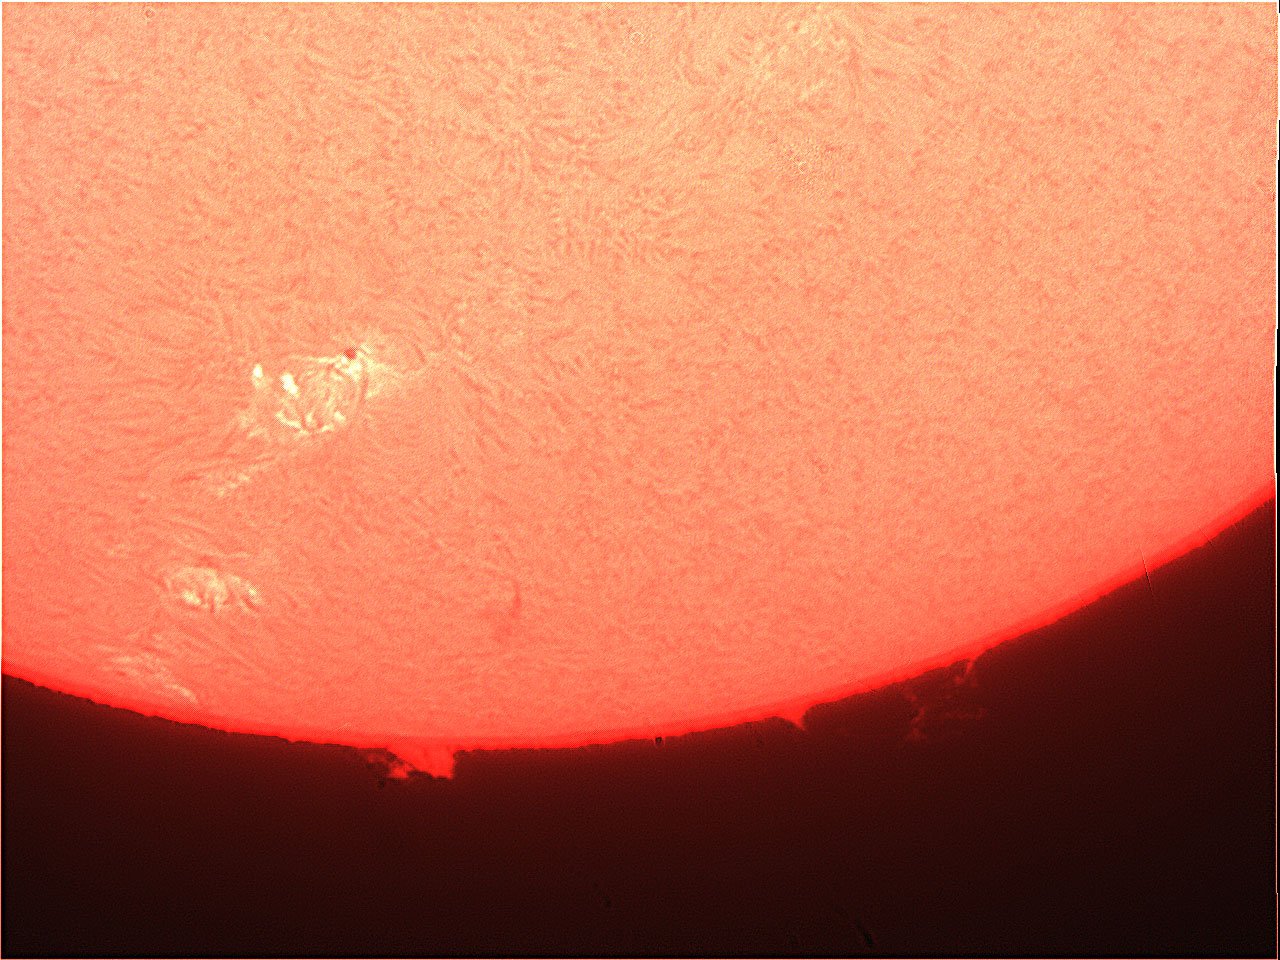 Prominence-151221-vid463.jpg